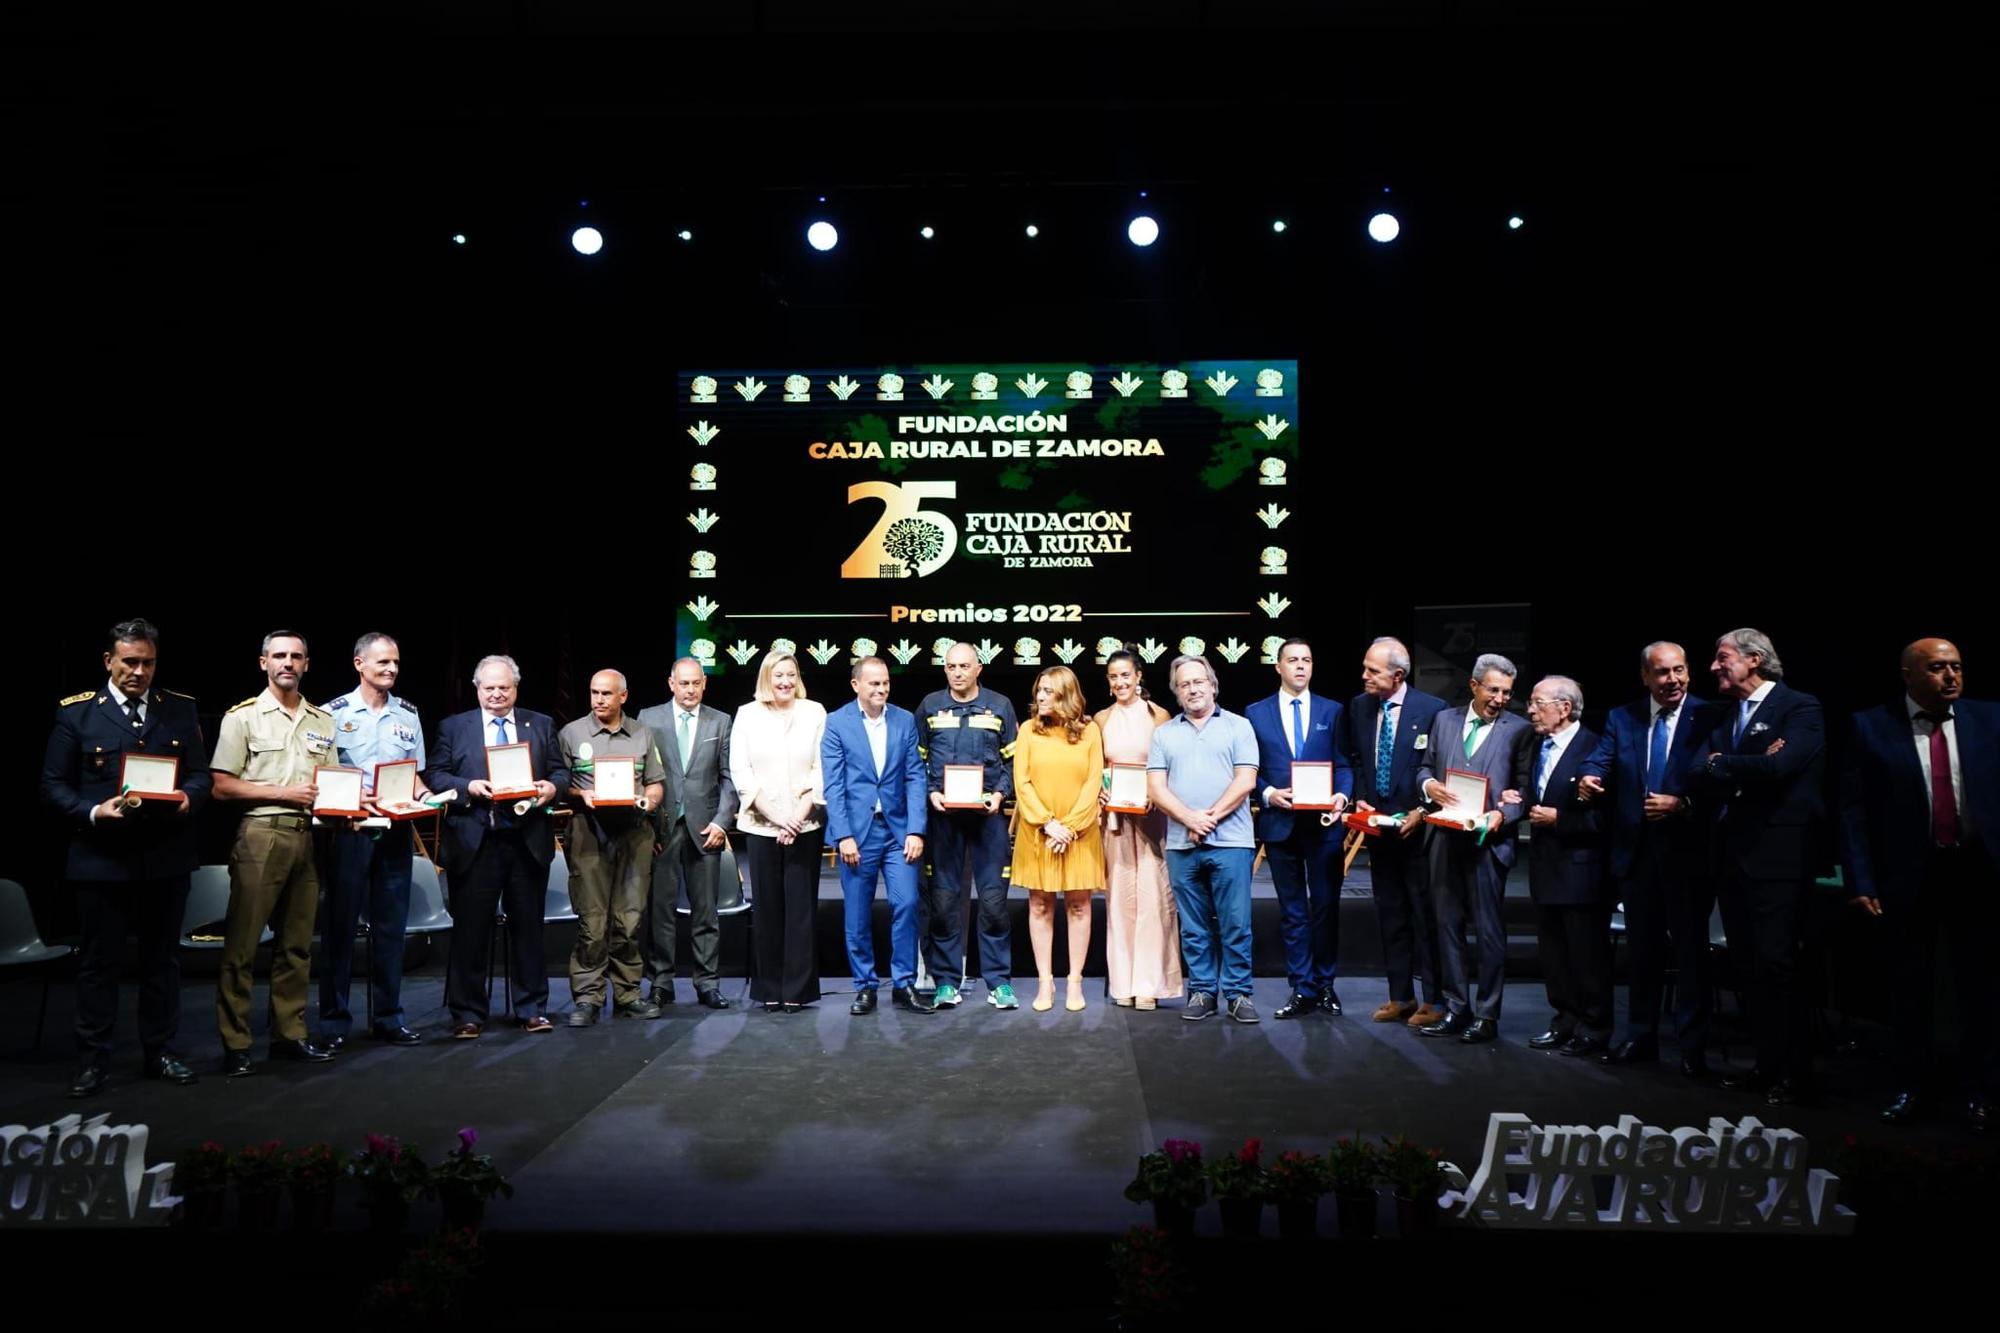 GALERÍA | Los premios de Caja Rural, en imágenes